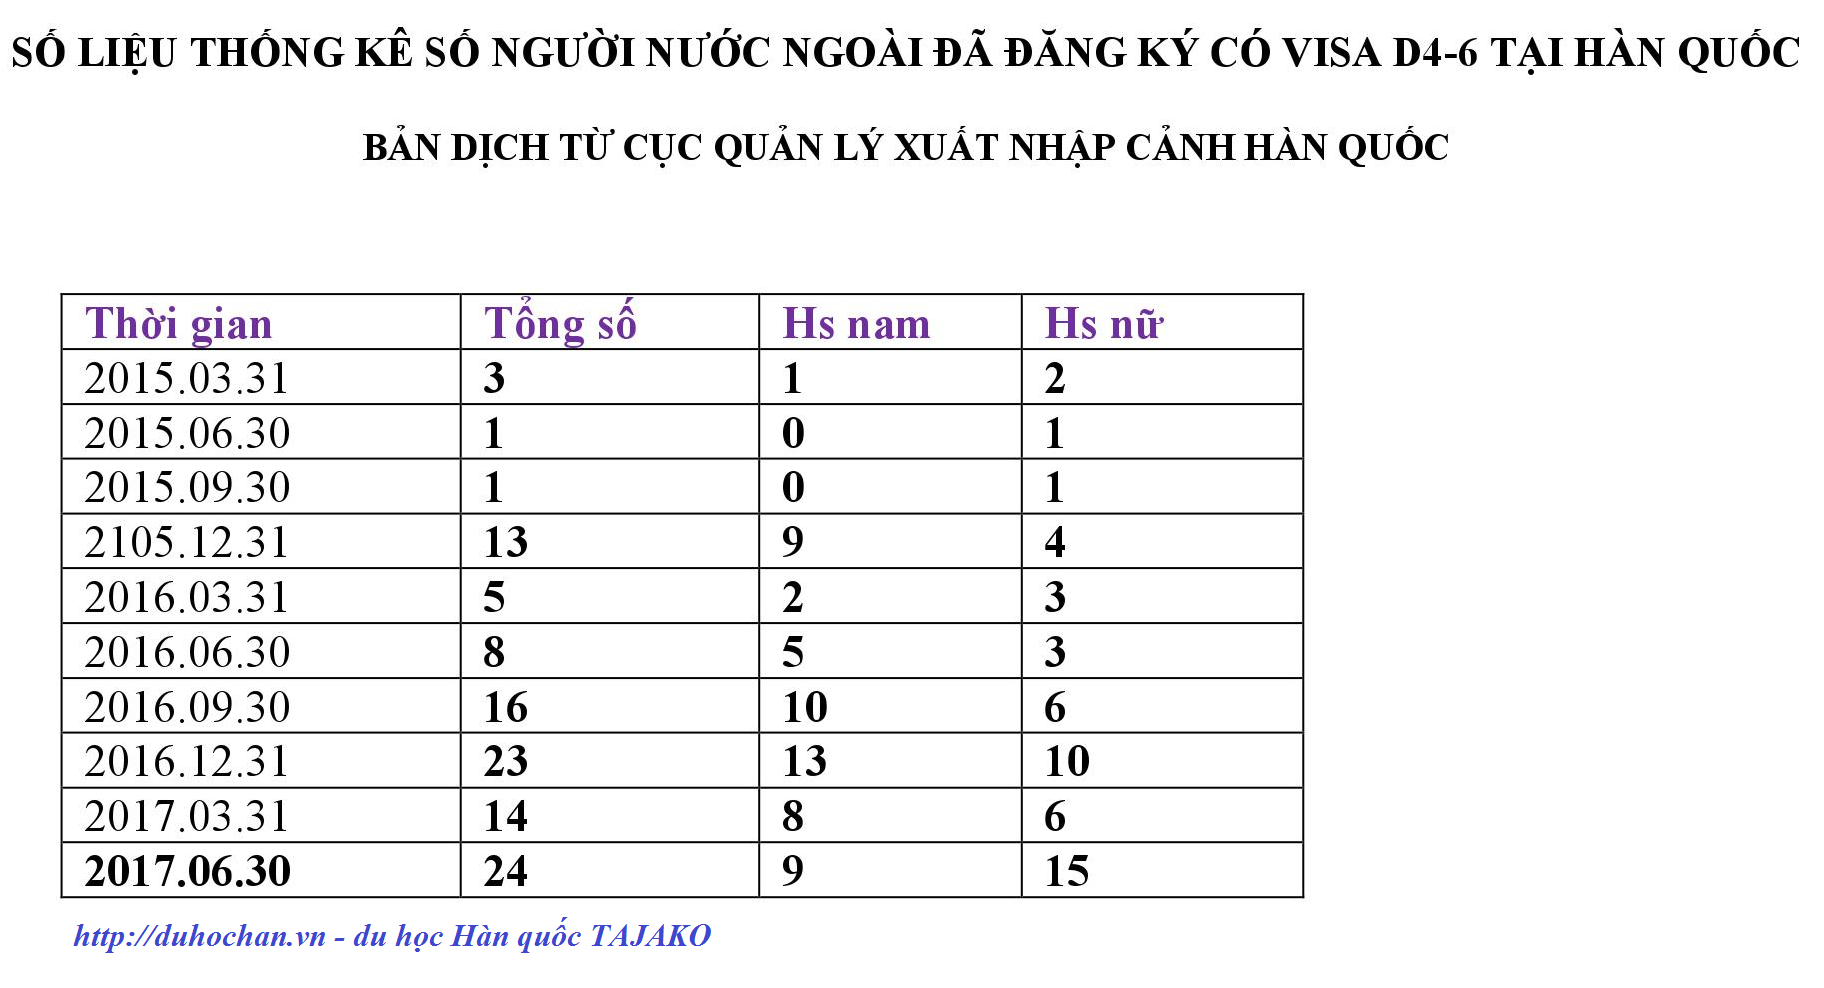 Số liệu thống kê Visa D4-6 tại Hàn Quốc